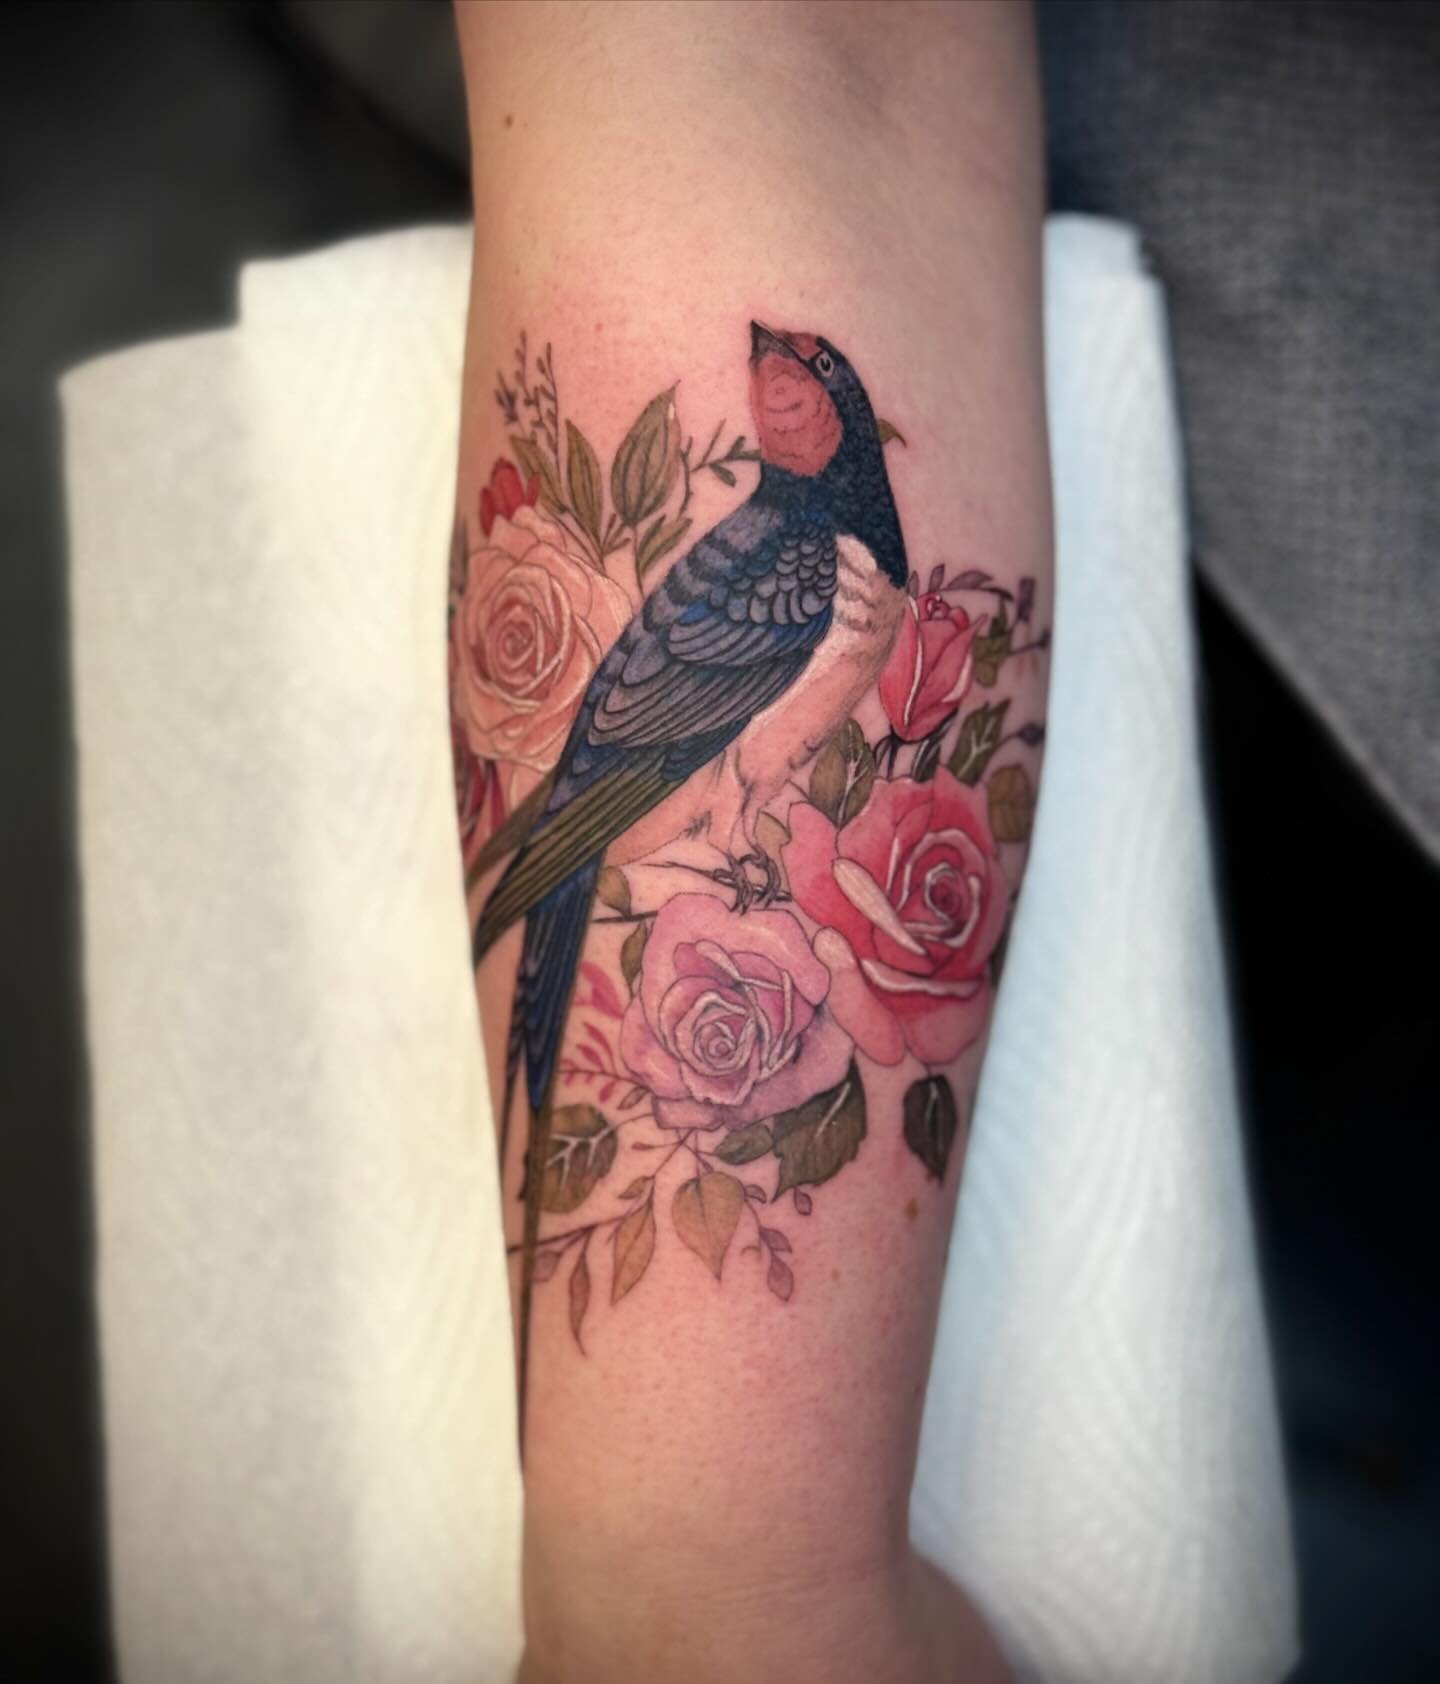 Bird/ 🥀
.
.
.
.
.
#tattoo #tattoos #tattooartist #photooftheday #illustration #tattooed #tattooideas #rosetattoo #birsfelden #basel #studio #switzerland #tattooing #tattoed #tattooformen  #thirtyfourtattoo #birdtattoo #floraltattoo #rosetattoo